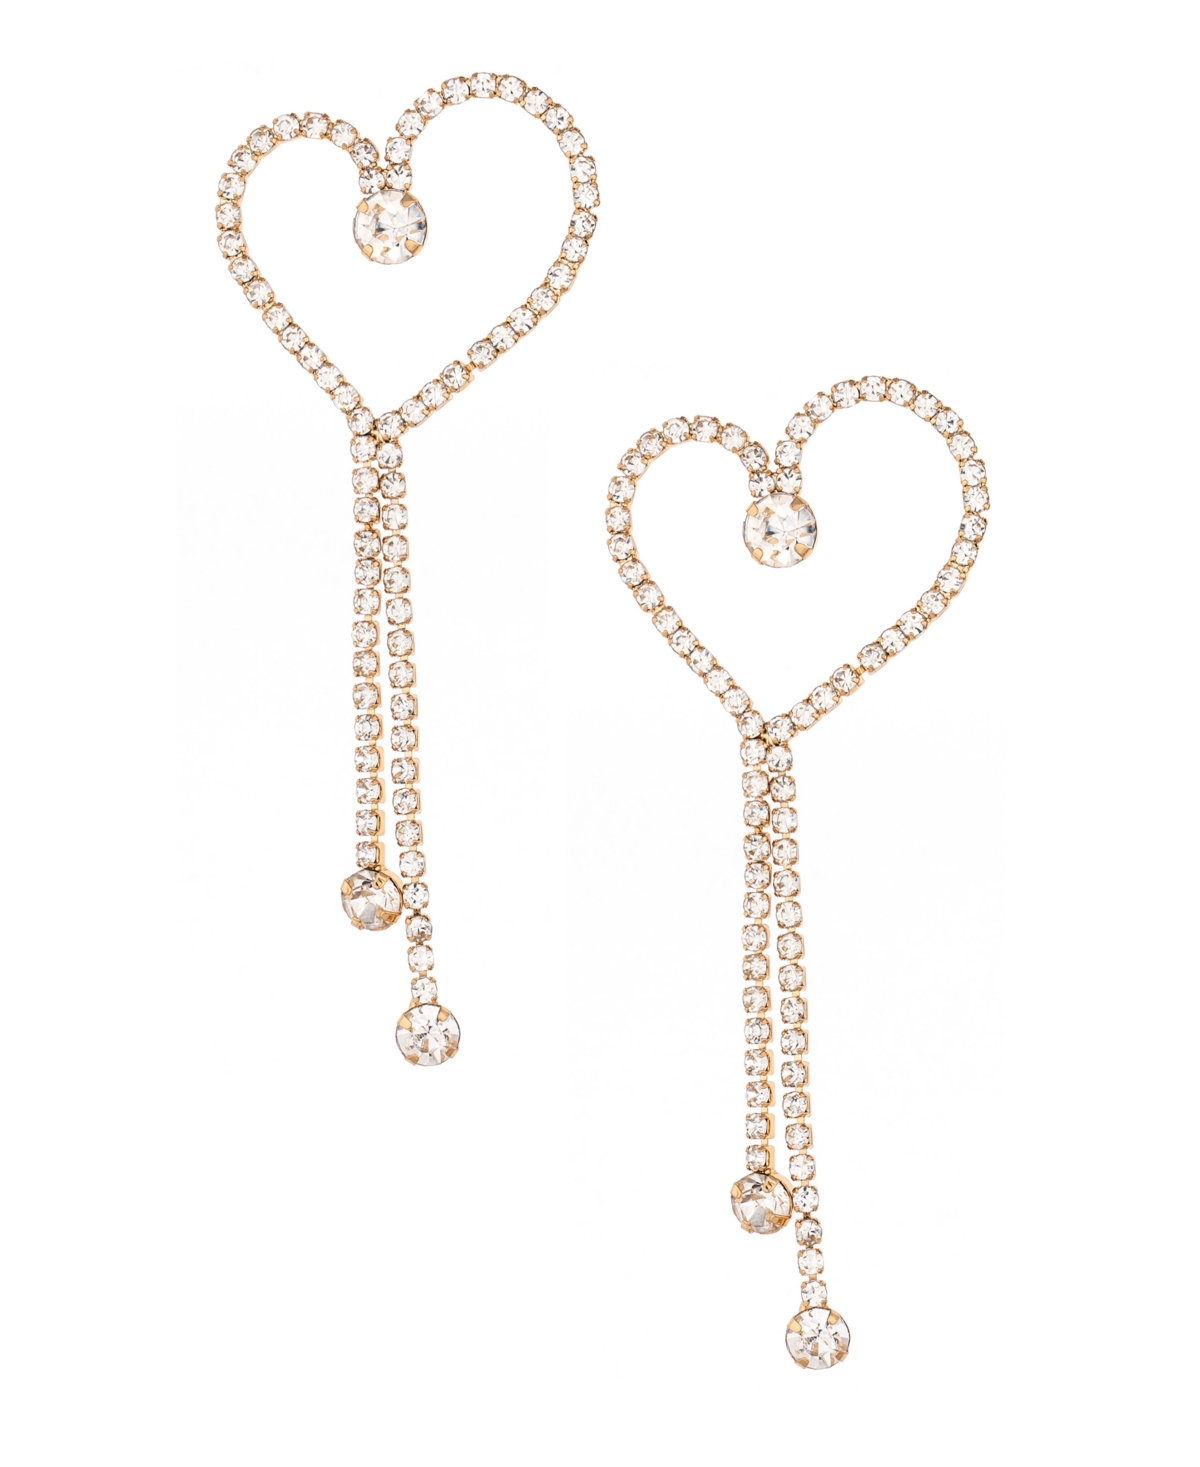 Ettika 18K Gold Plated Heart Dangle Earrings